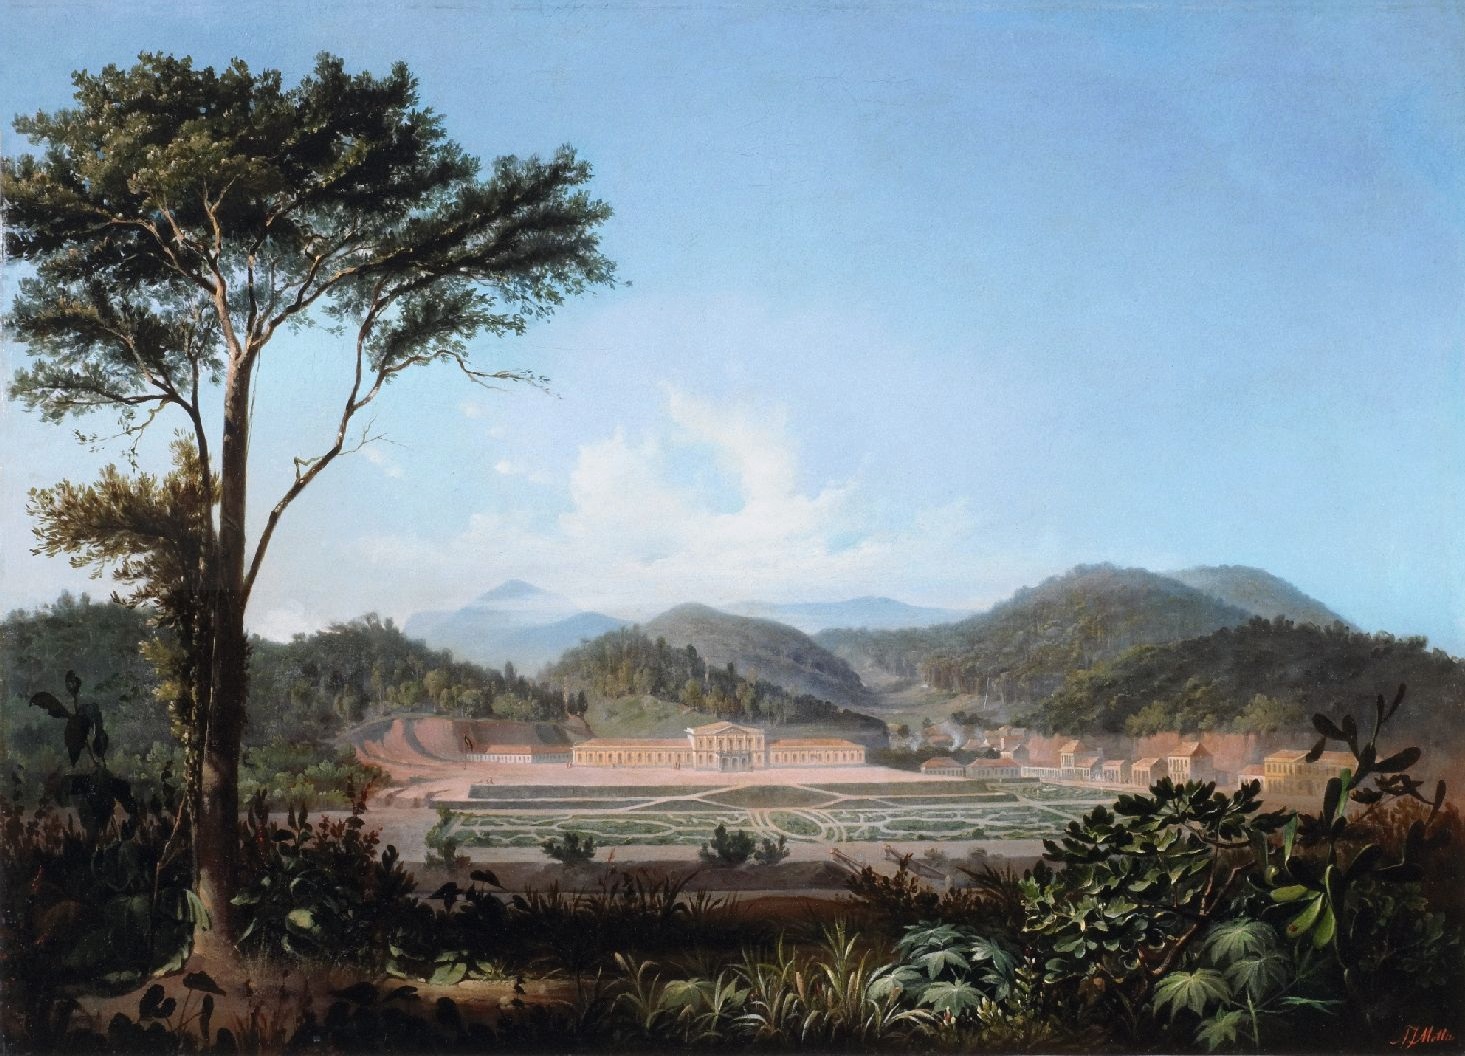 Museu Imperial visto de longe, em 1855